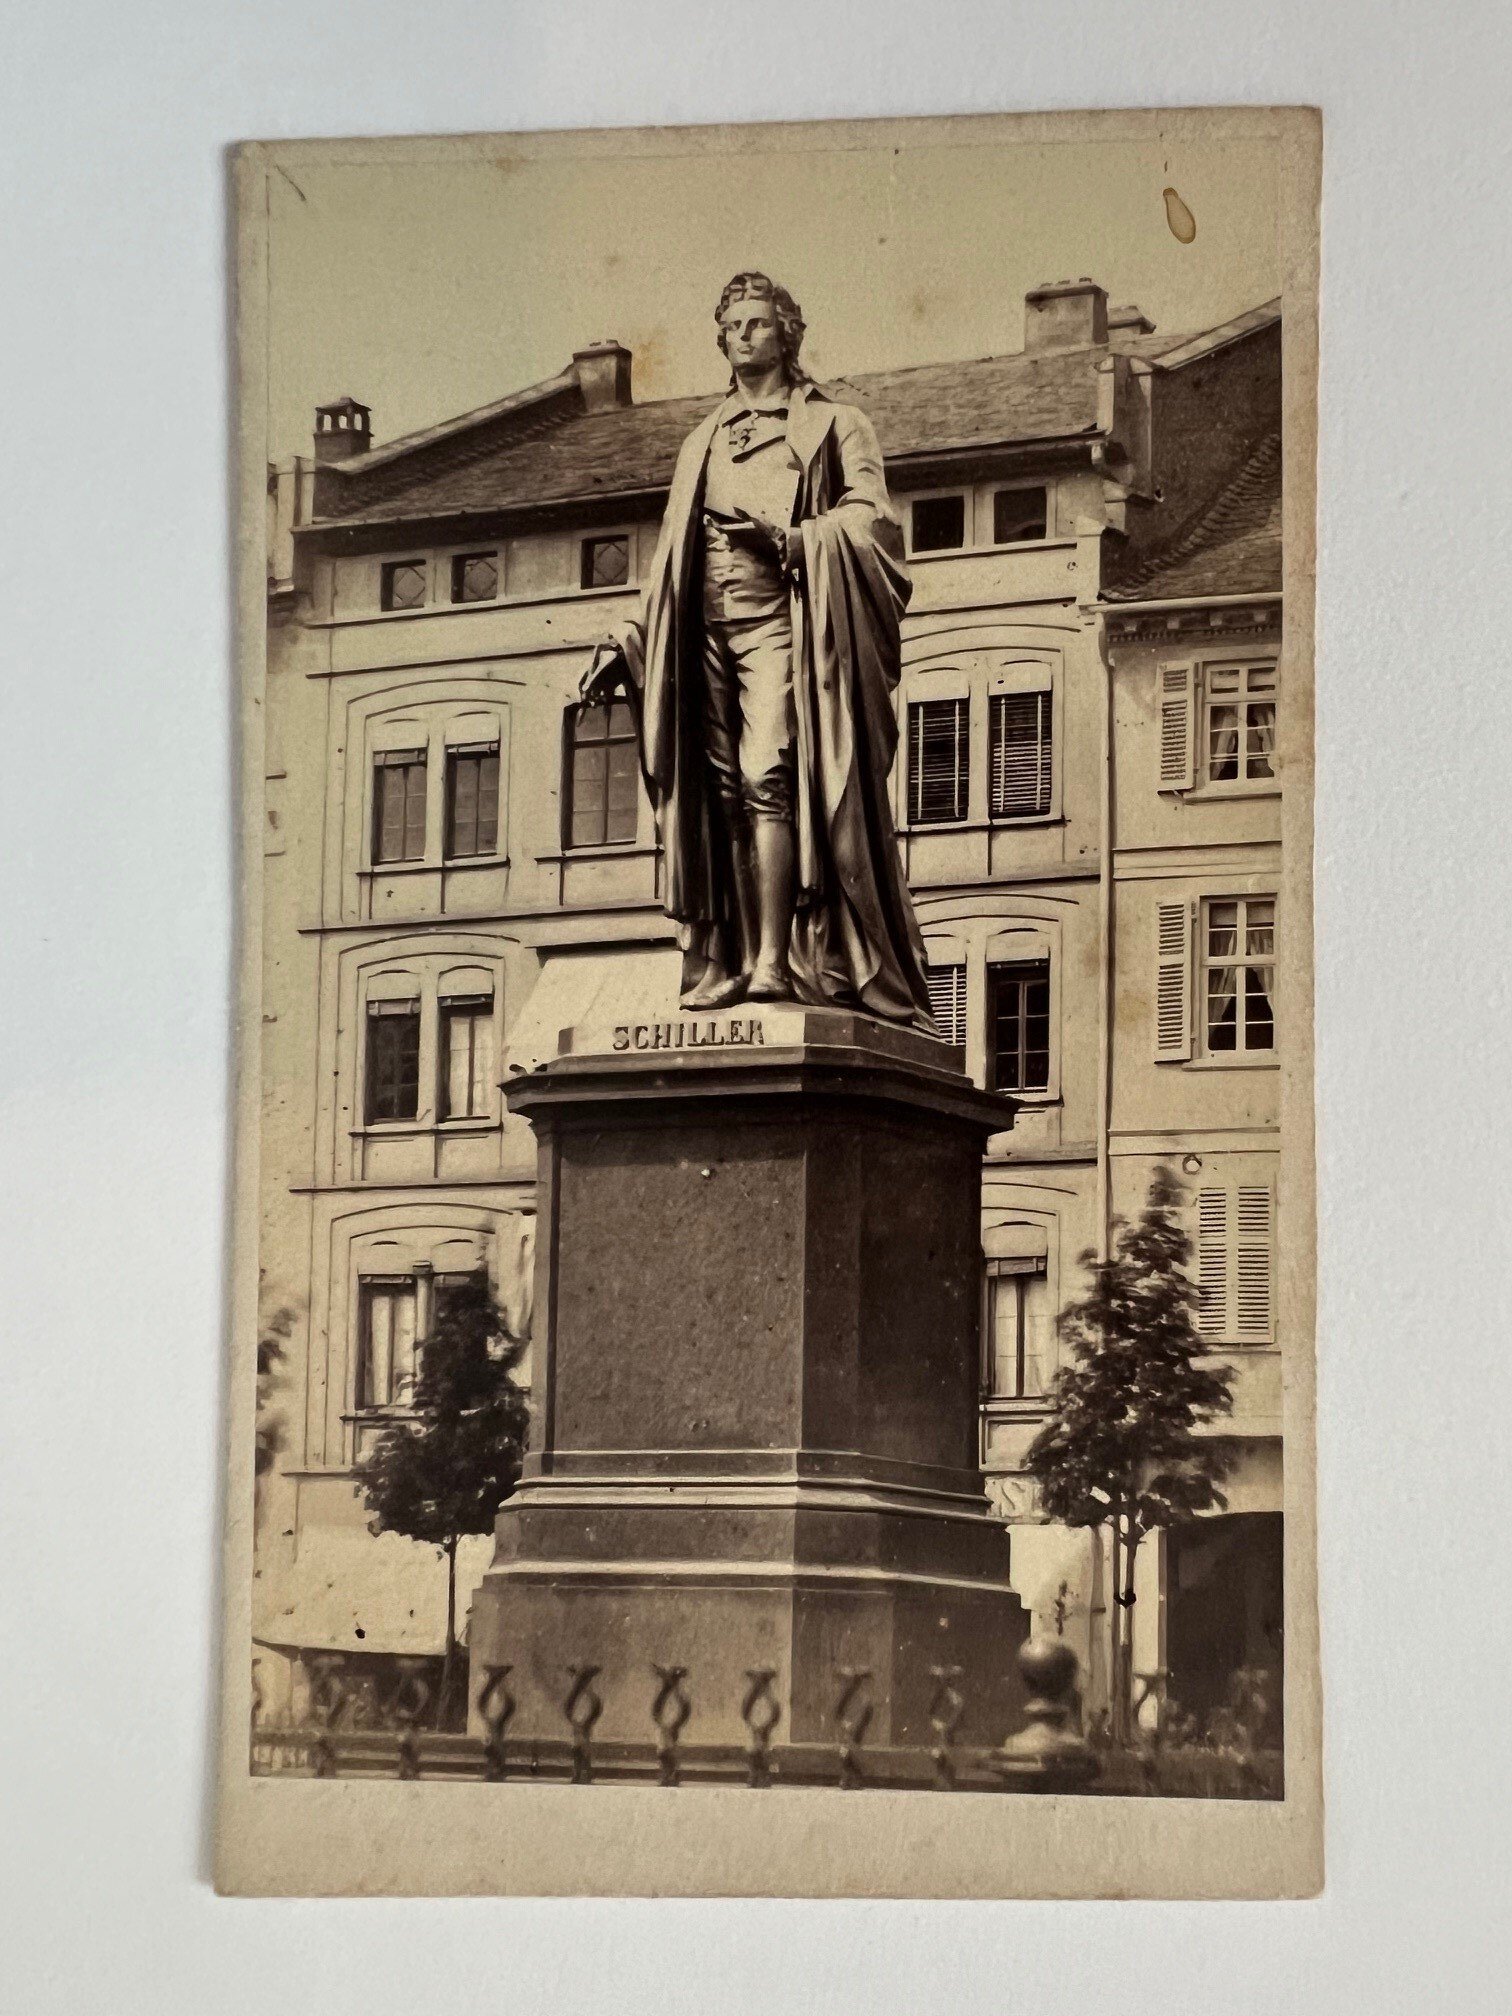 CdV, Unbekannter Fotograf, Frankfurt, Schiller-Denkmal, ca. 1865 (Taunus-Rhein-Main - Regionalgeschichtliche Sammlung Dr. Stefan Naas CC BY-NC-SA)